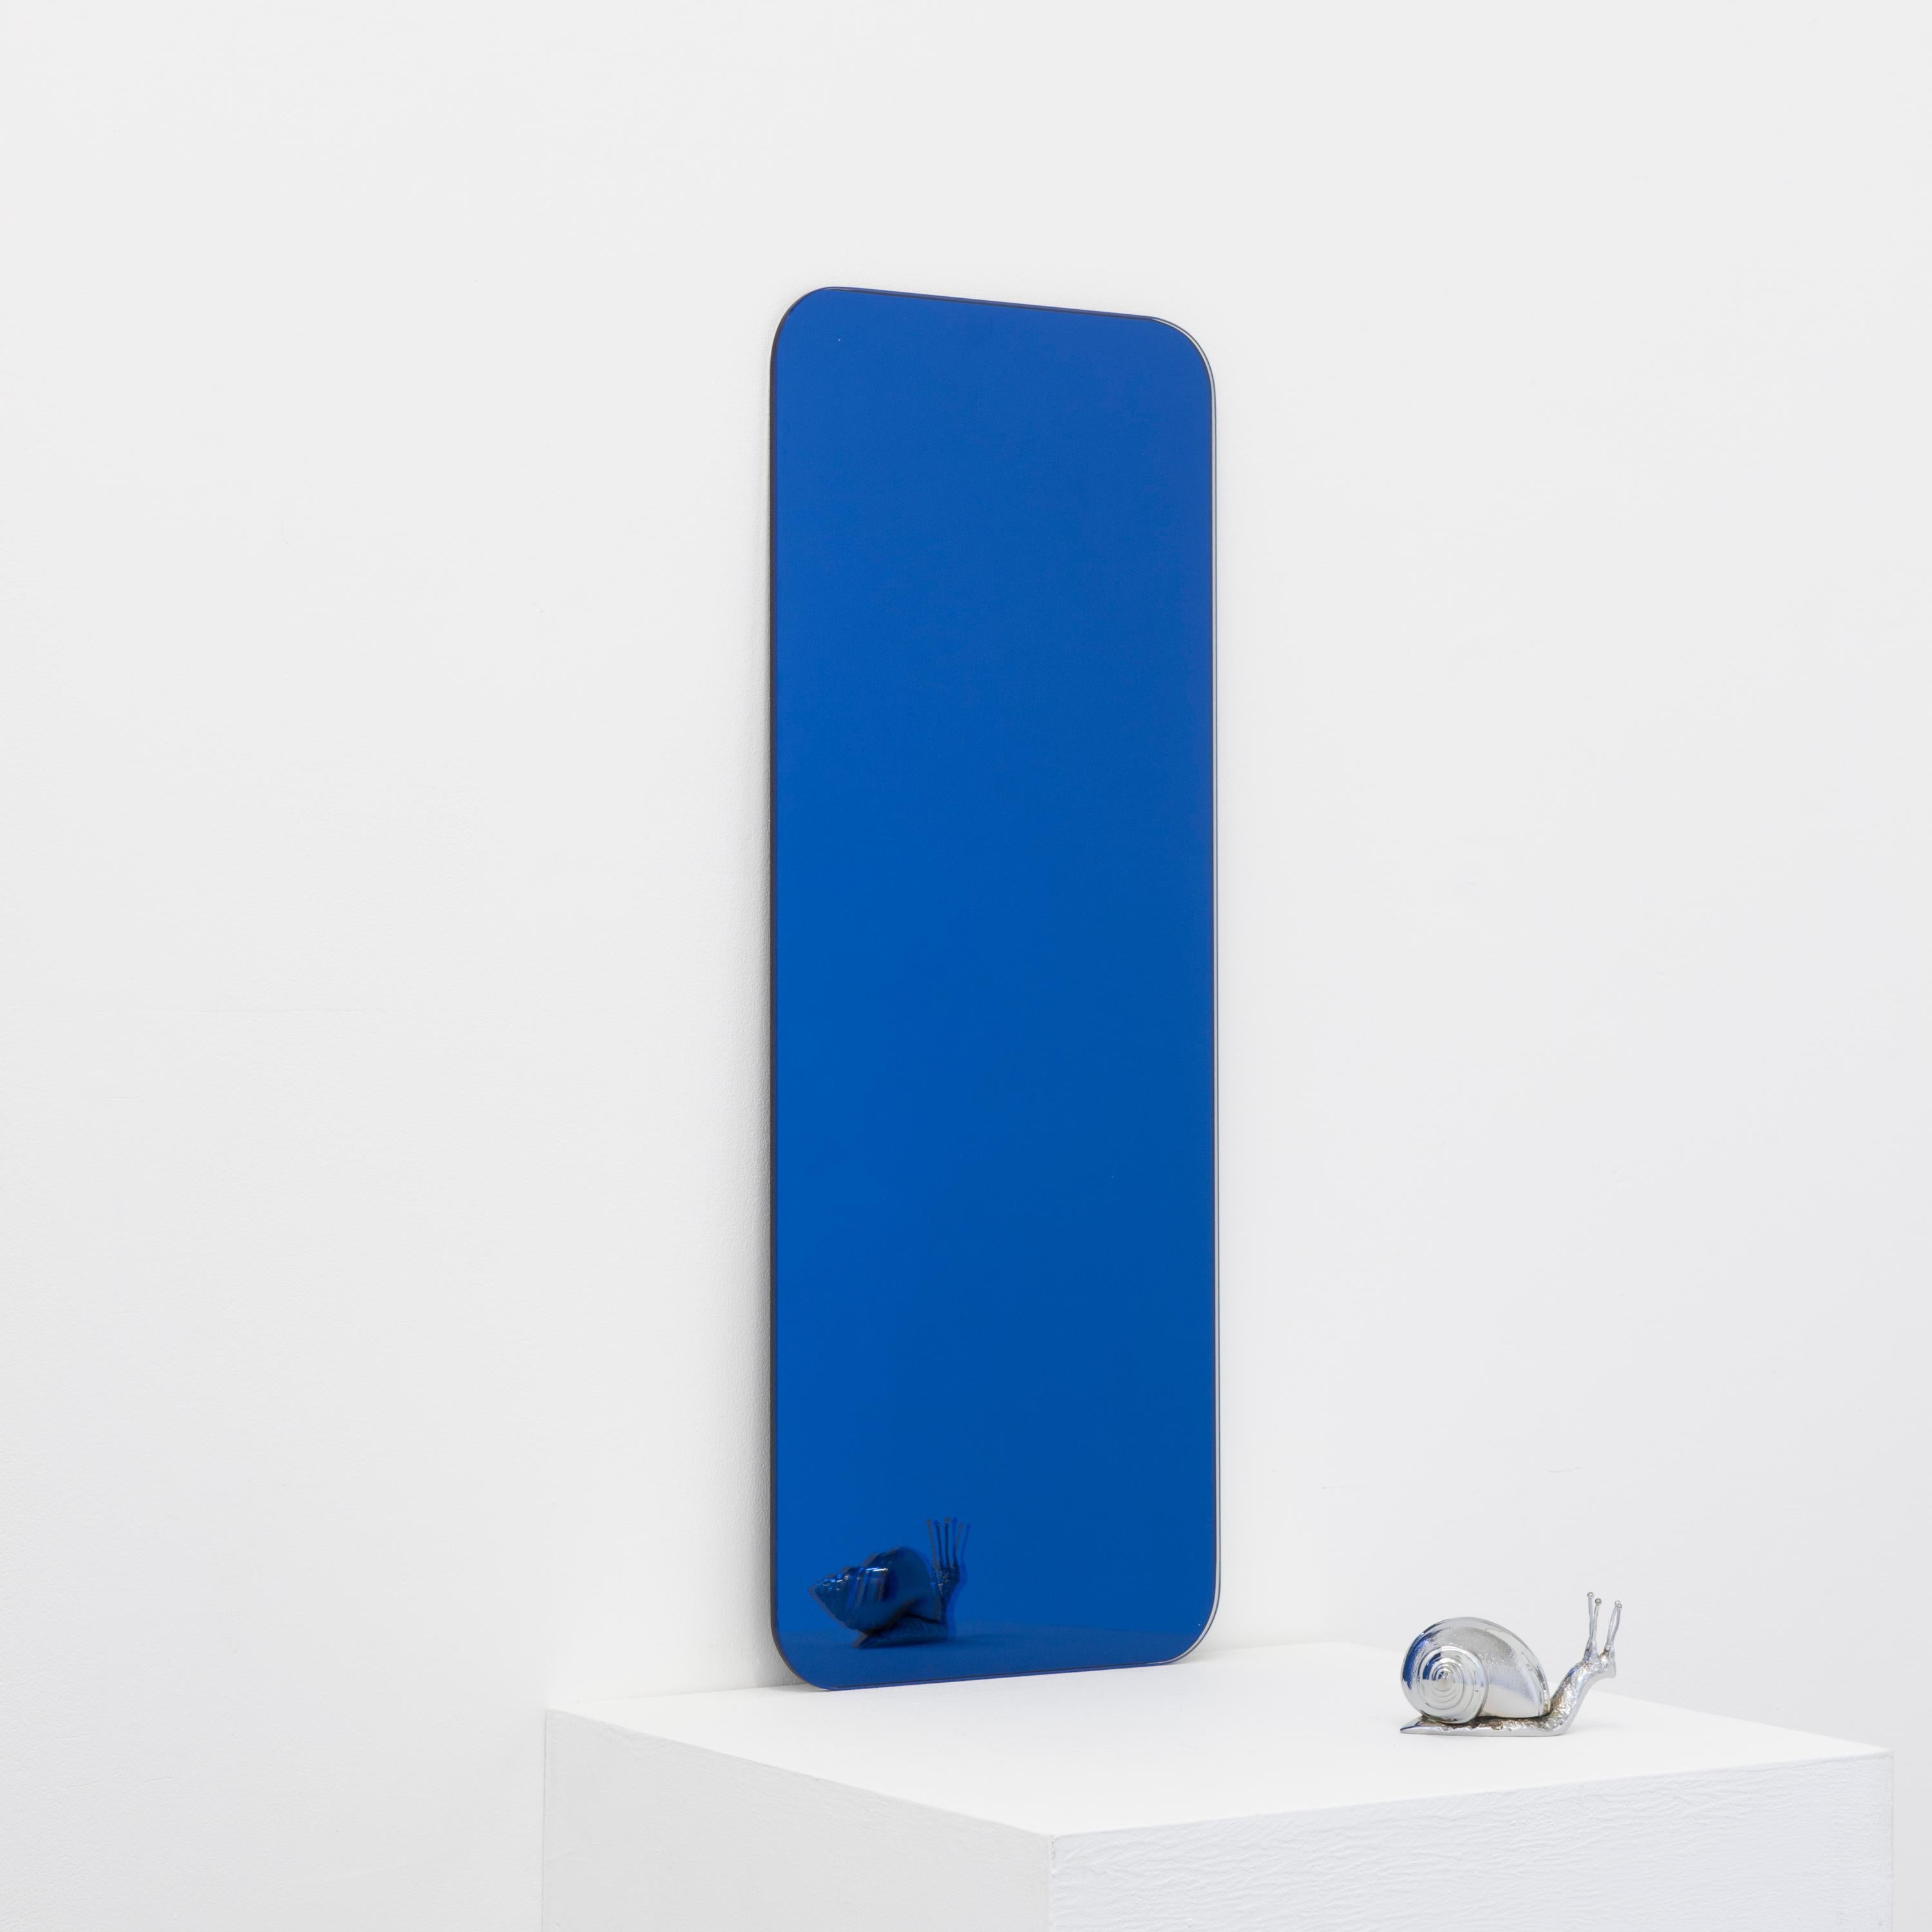 Minimalistischer, rechteckiger, rahmenloser, blau getönter Spiegel mit Schwebeeffekt. Hochwertiges Design, das dafür sorgt, dass der Spiegel perfekt parallel zur Wand steht. Entworfen und hergestellt in London, UK.

Ausgestattet mit professionellen